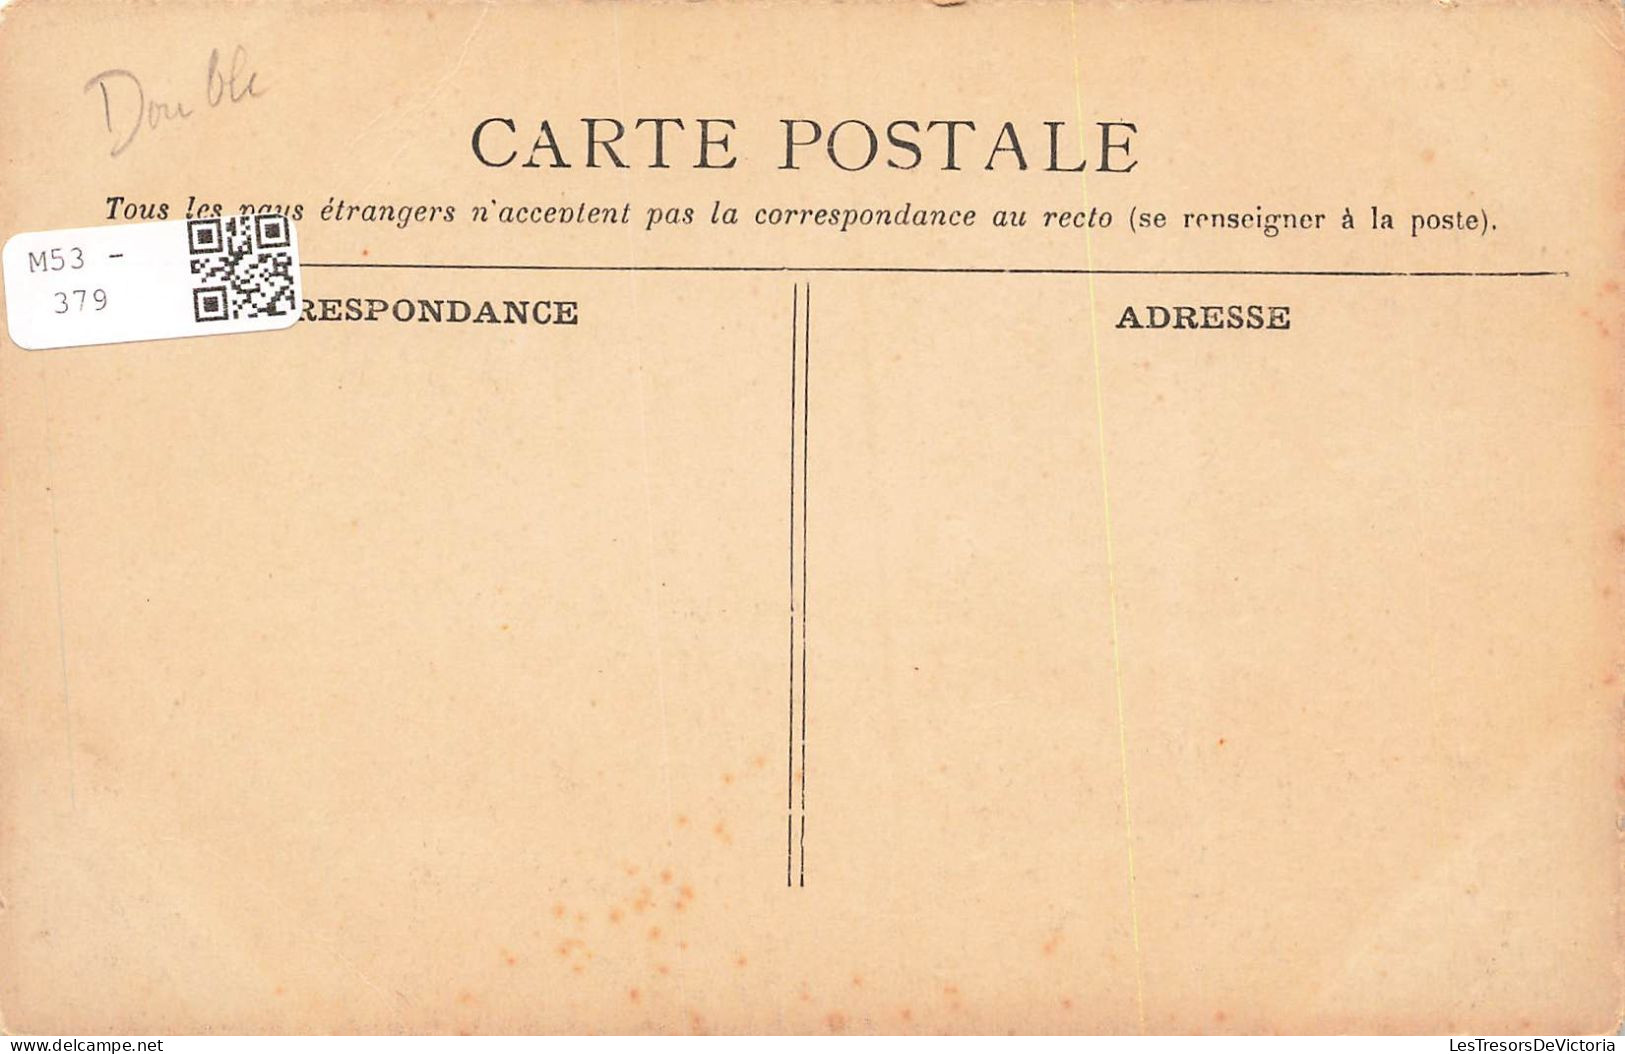 TRANSPORTS - Bateaux - Paquebots - Le Havre - Le Transatlantique - La Touraine - Colorisé - Carte Postale Ancienne - Steamers